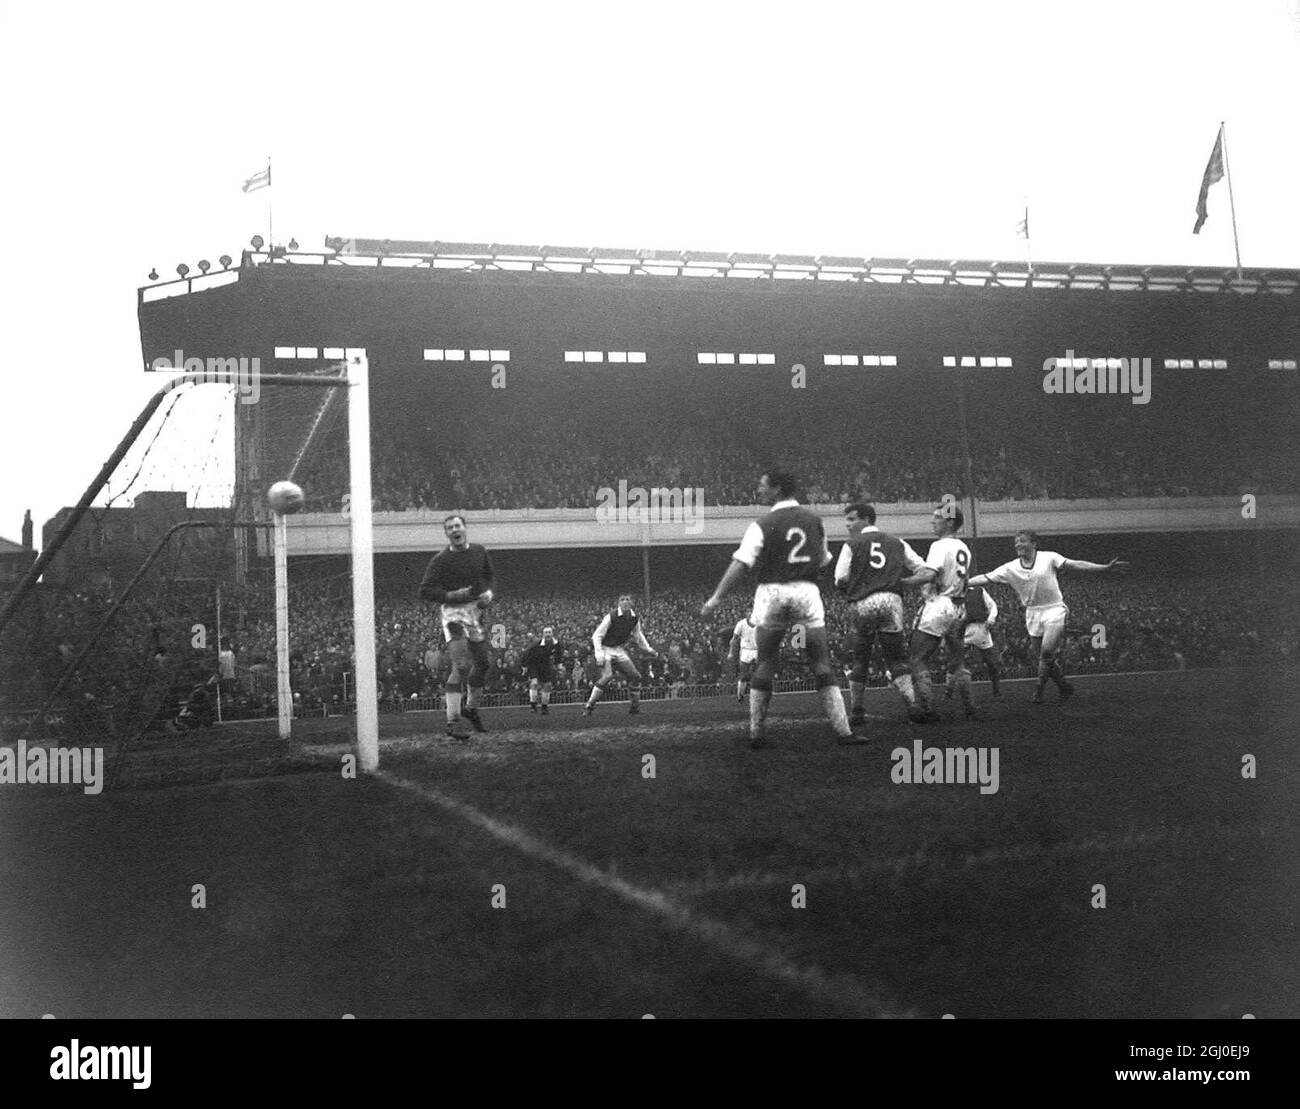 Arsenal contro Manchester United tutti gli occhi sono sulla palla mentre naviga in rete da un header di Albert Quixall (Man Utd) visto all'estrema destra. A sinistra c'è il portiere dell'Arsenale Jack Kelsey, e si vedono anche Wills (No.2) e Snedden (No.5), entrambi dell'Arsenale, e Viollet (Man Utd) No.9. 29 ottobre 1960. Foto Stock